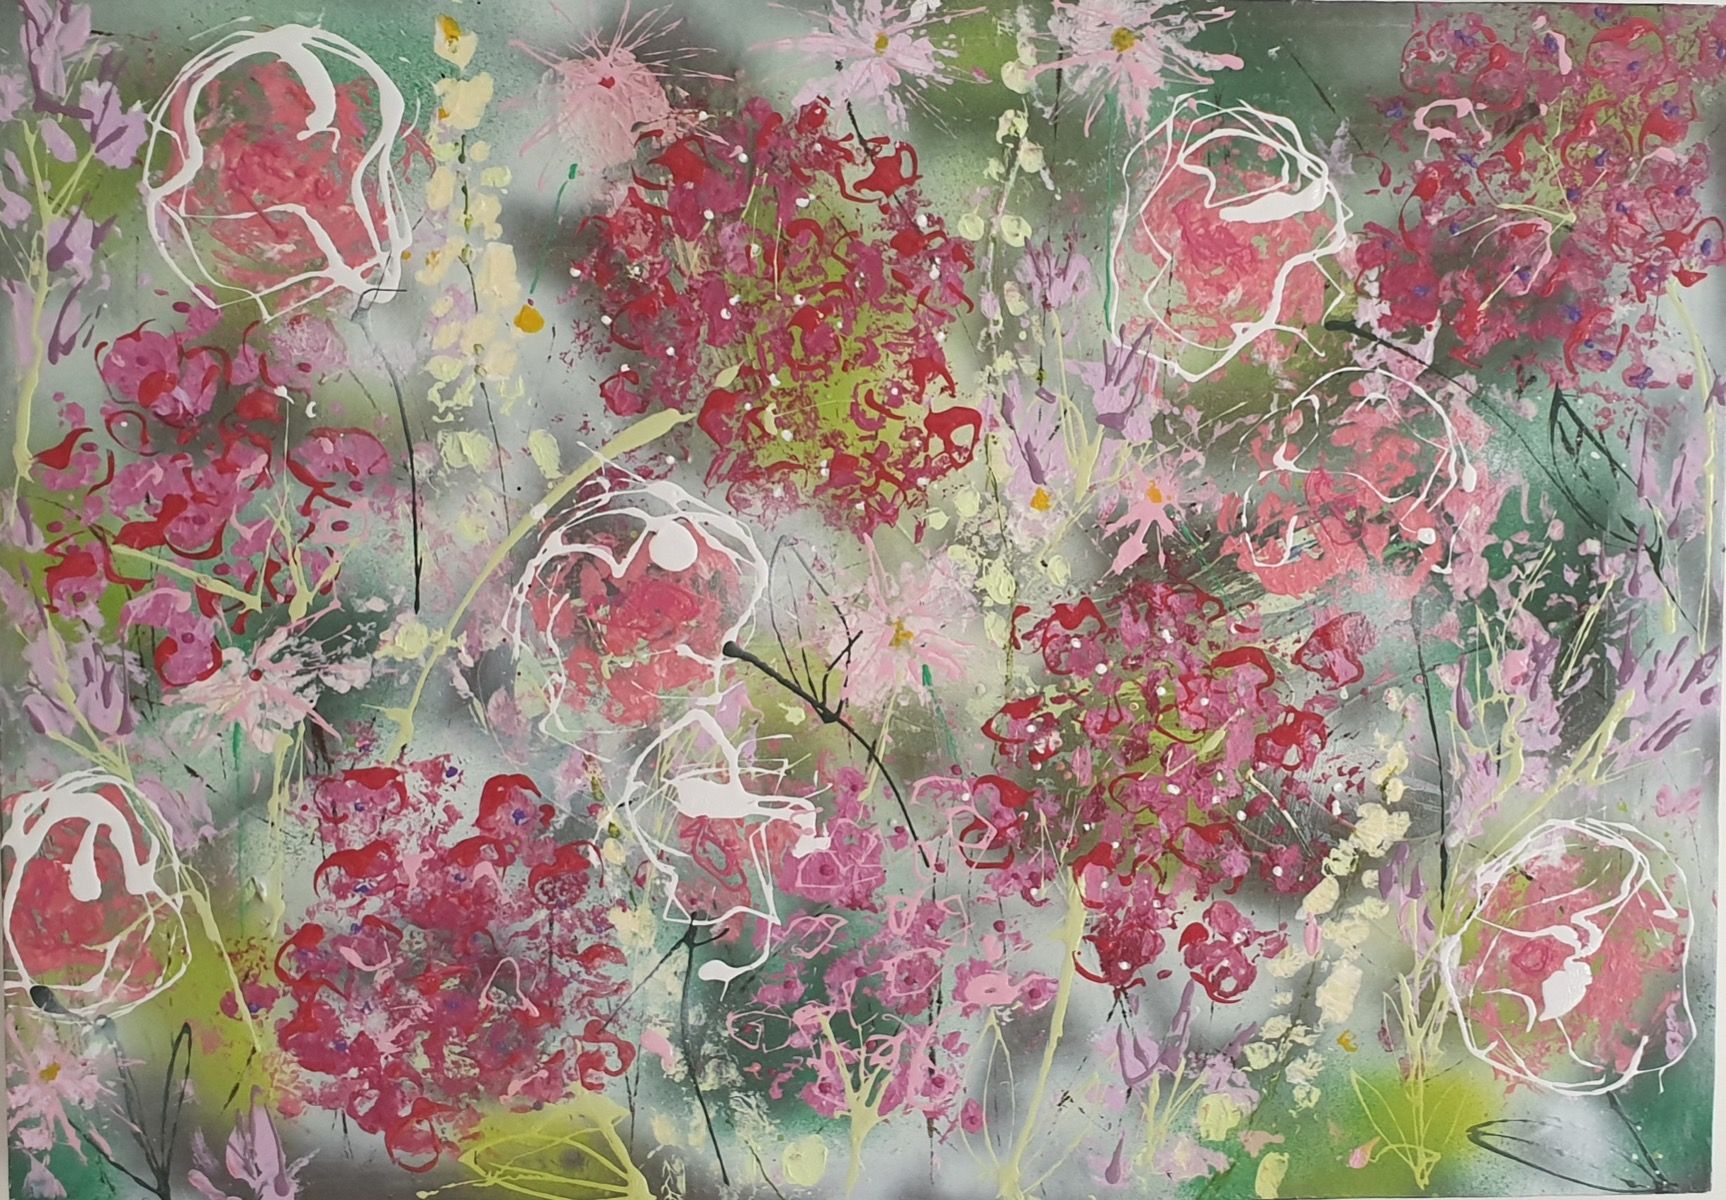 Abstract Flowers (Hydrangeas) by Julia Adams